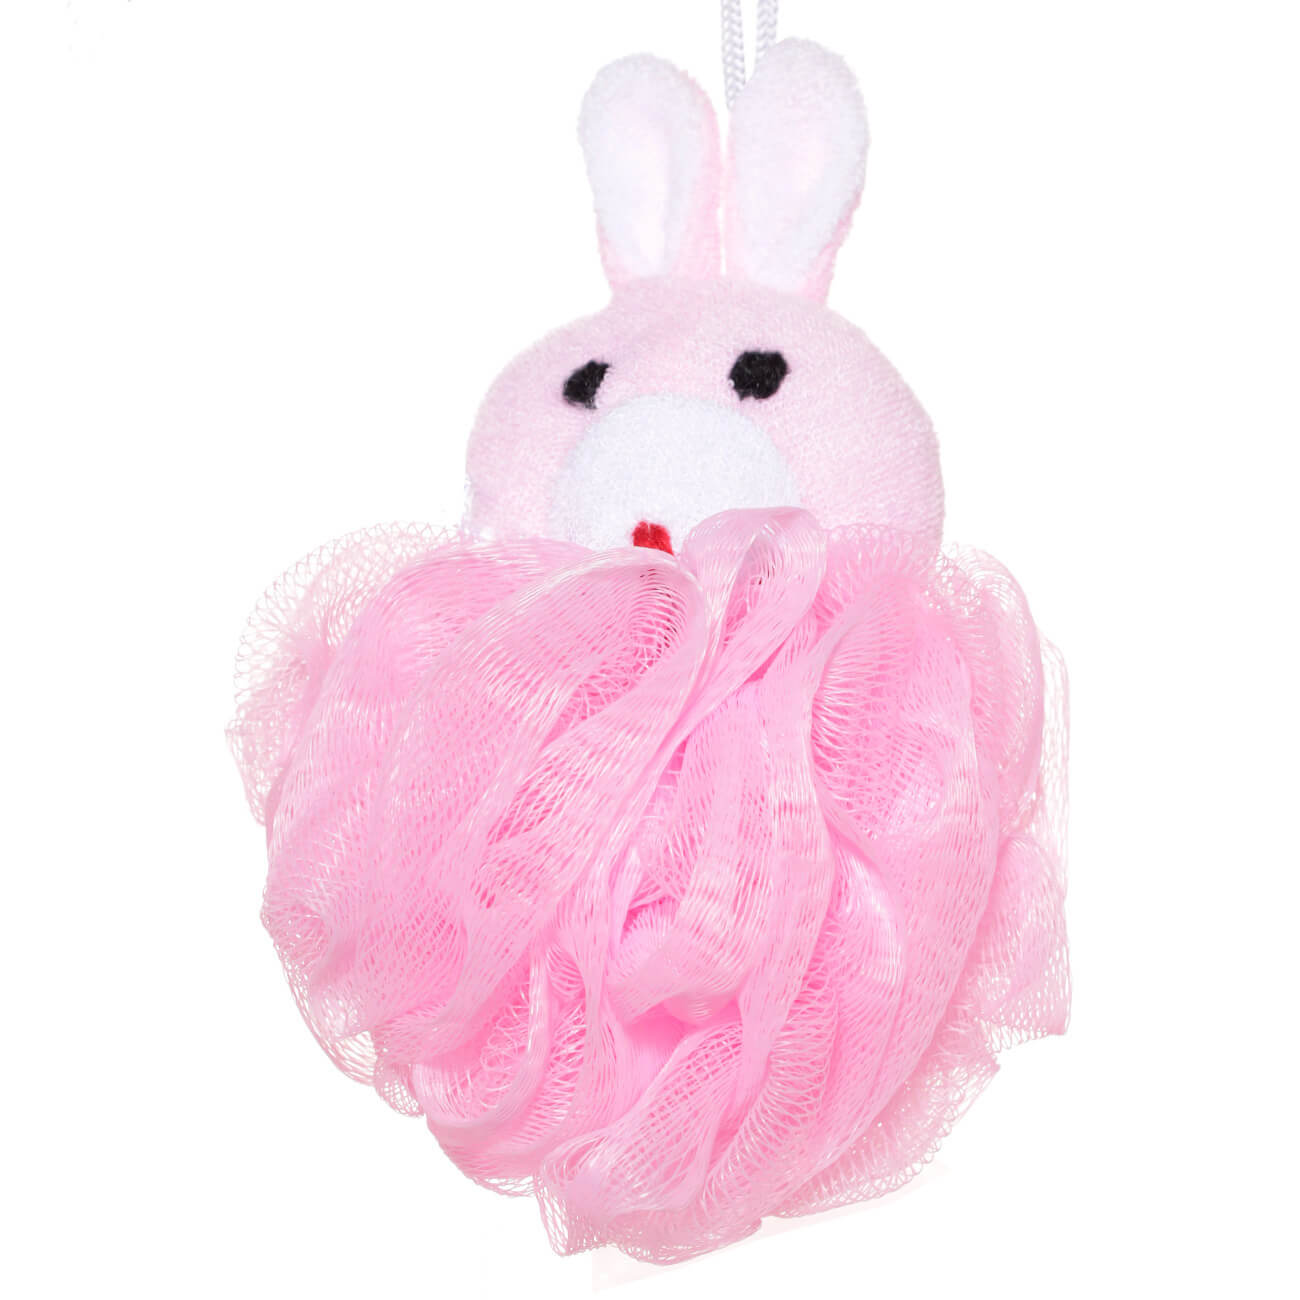 Мочалка для мытья тела, 12 см, детская, полиэтилен/полиэстер, розовая, Заяц, Rabbit мочалка брикет для тела